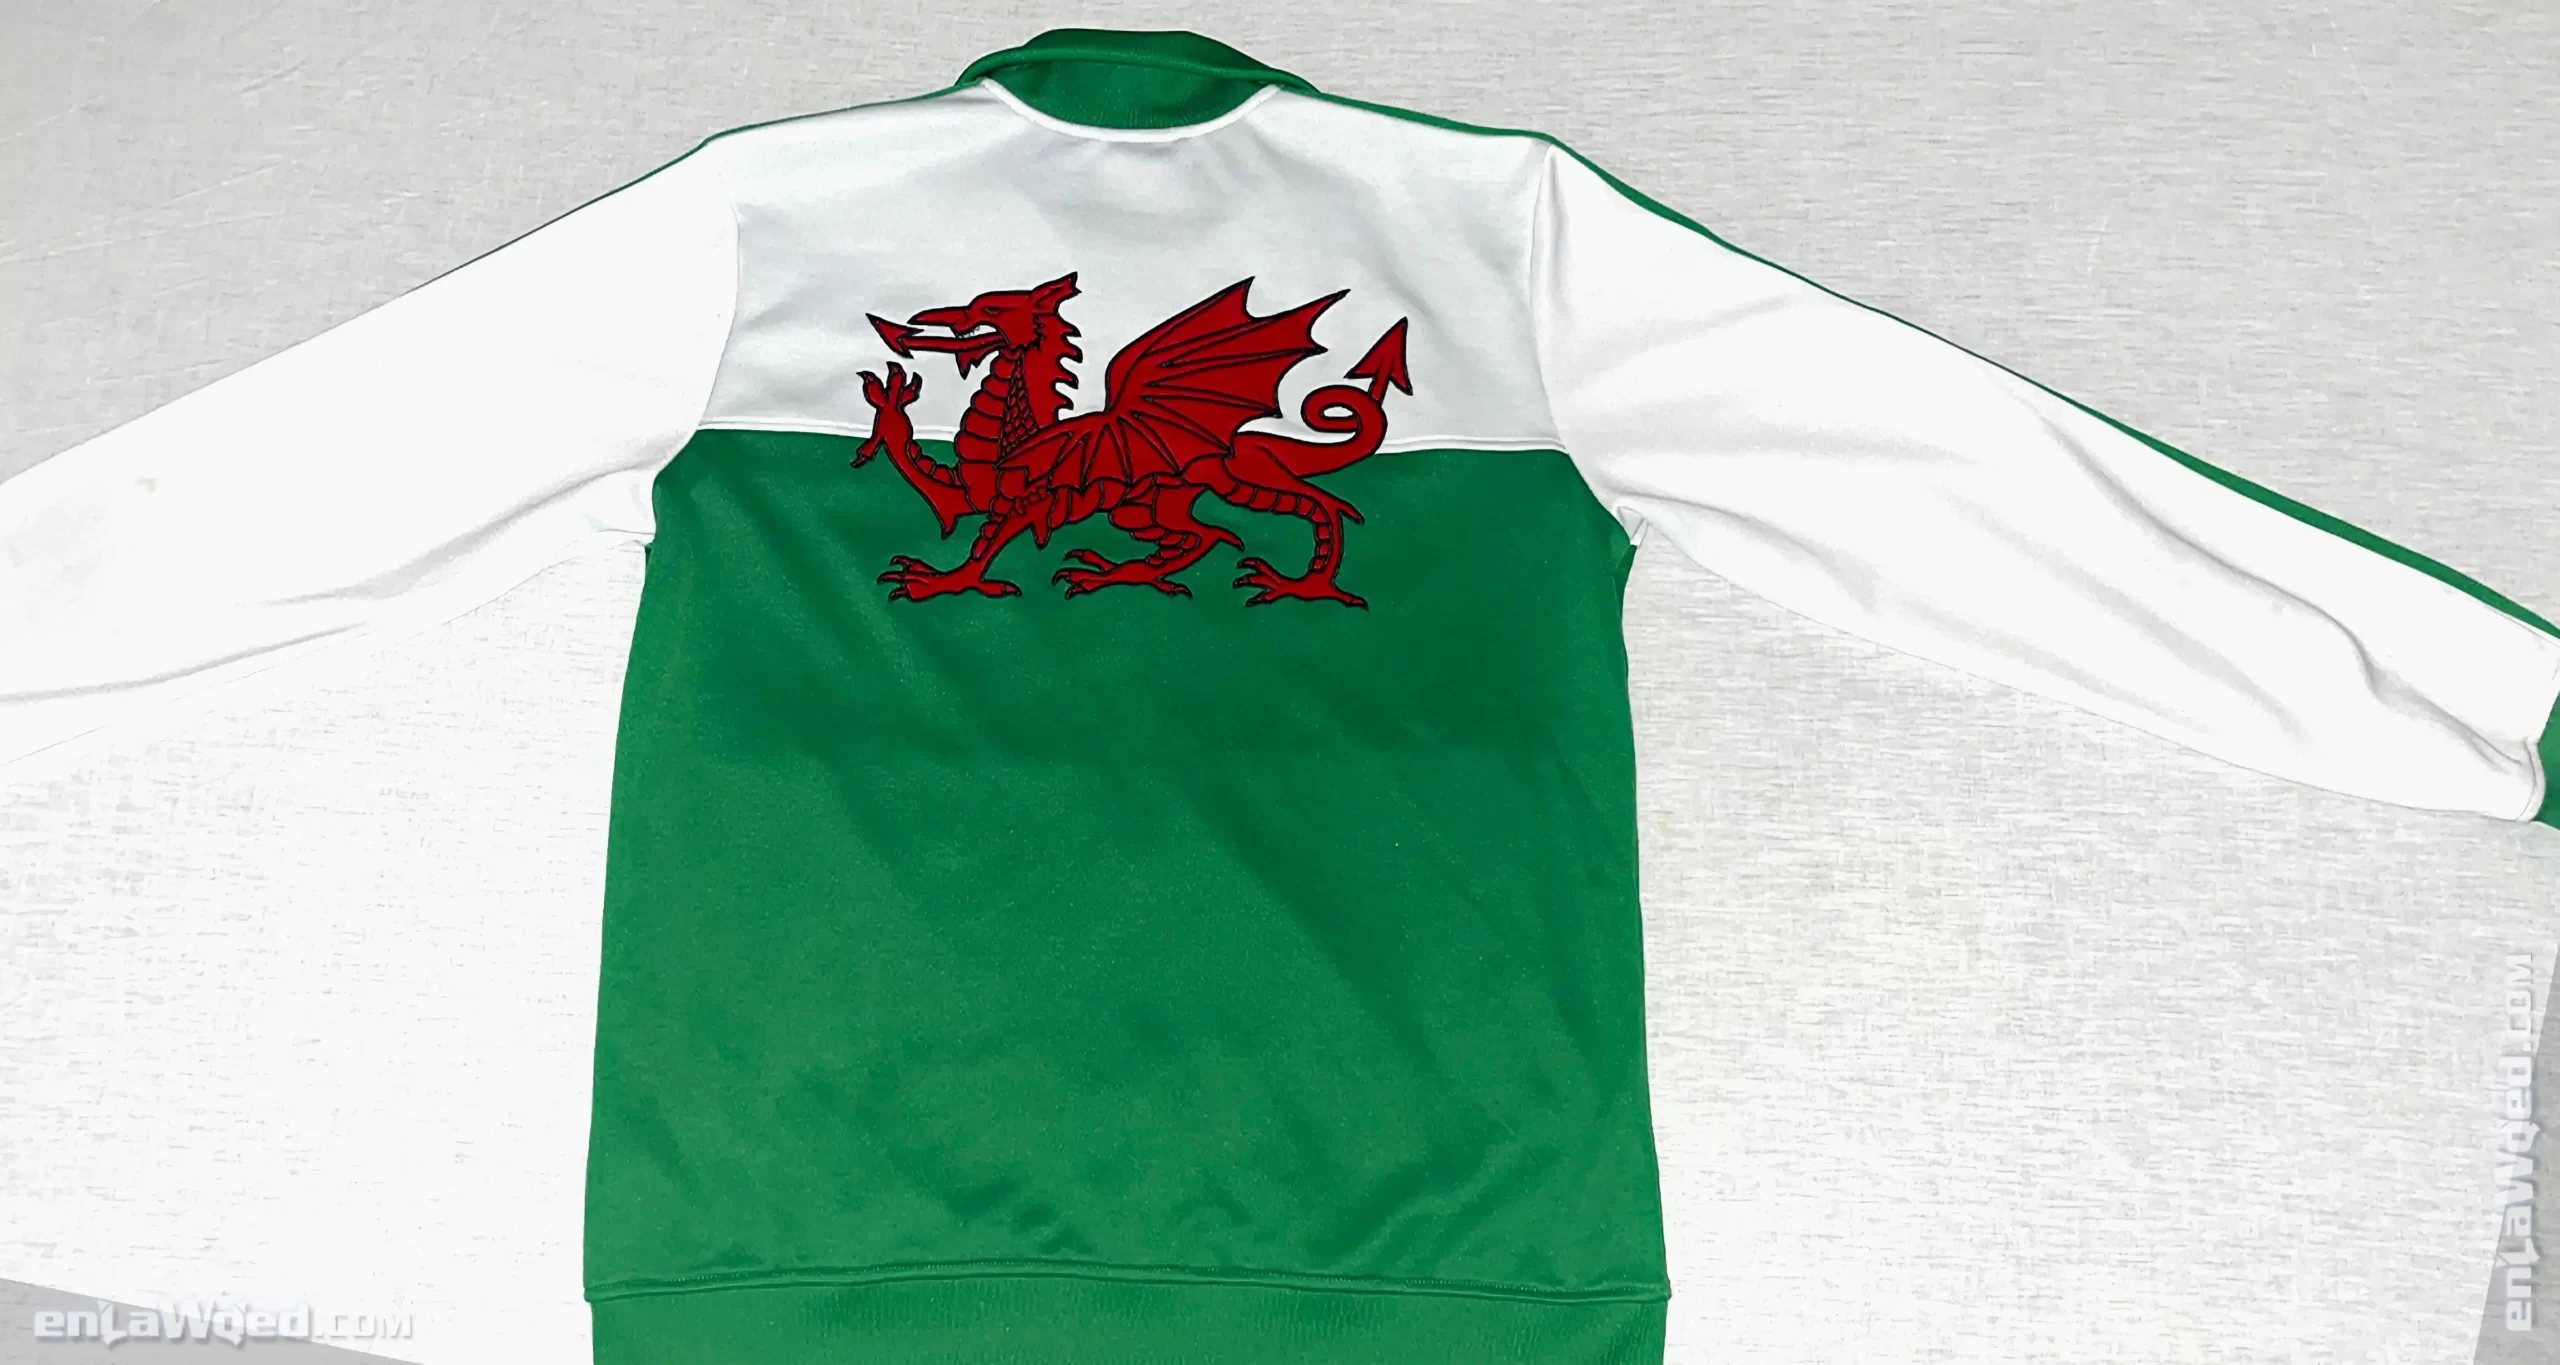 Men’s 2008 Wales TT by Adidas Originals: Heartwarming (EnLawded.com file #lp1mzidd12625818k9i6f552)